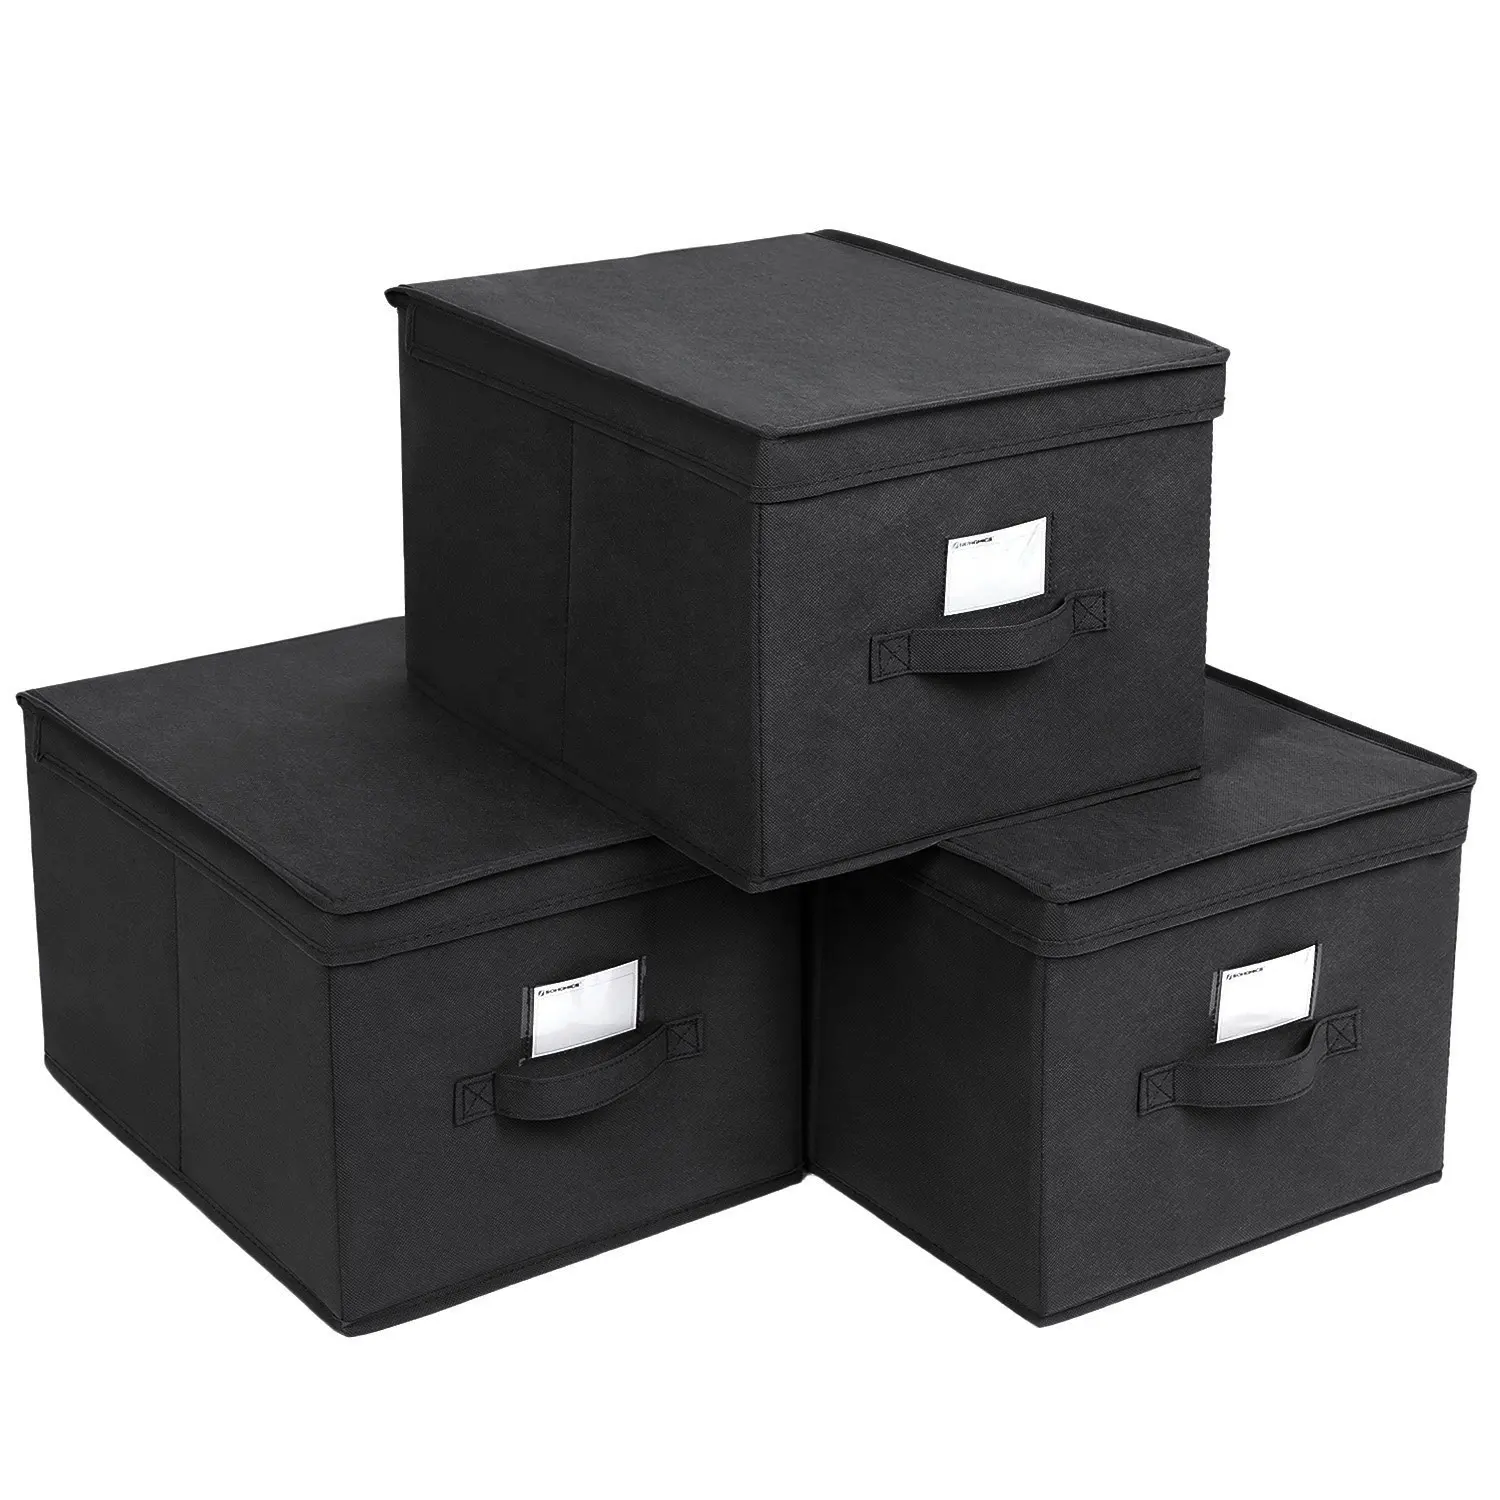 SONGMICS 3 teile/satz faltbare Aufbewahrung boxen mit Deckel Stoff würfel mit Etiketten halter Aufbewahrung behälter Organizer